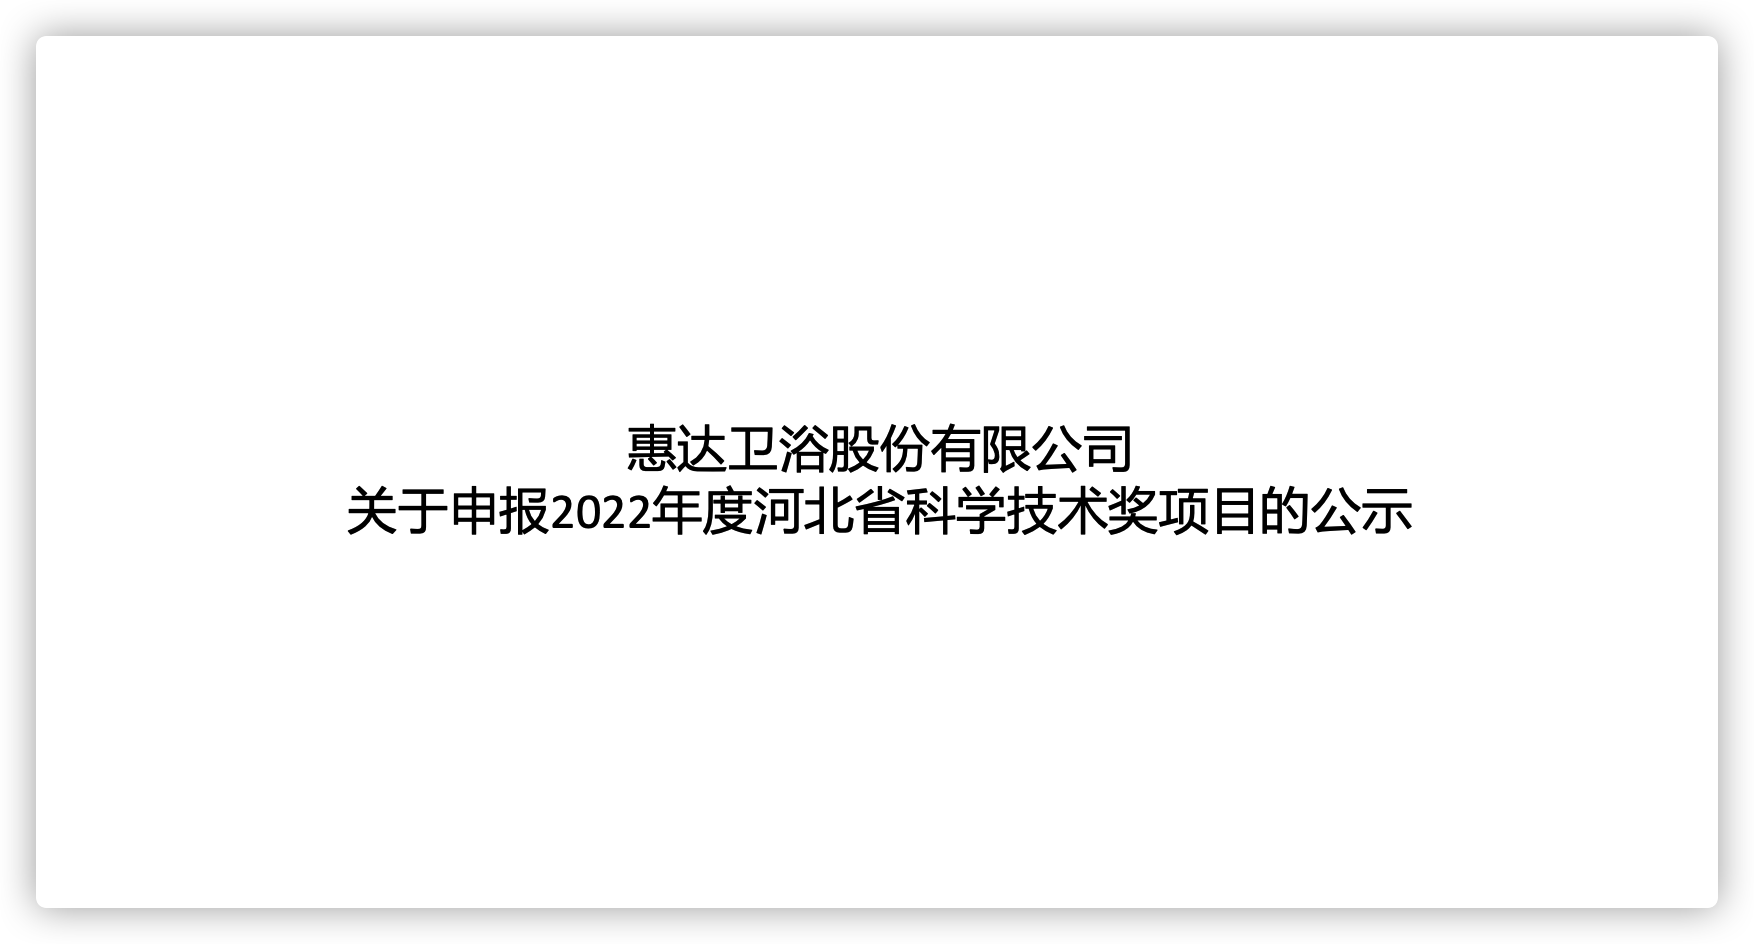 米乐m6
卫浴股份有限公司关于申报2022年度河北省科学技术奖项目的公示